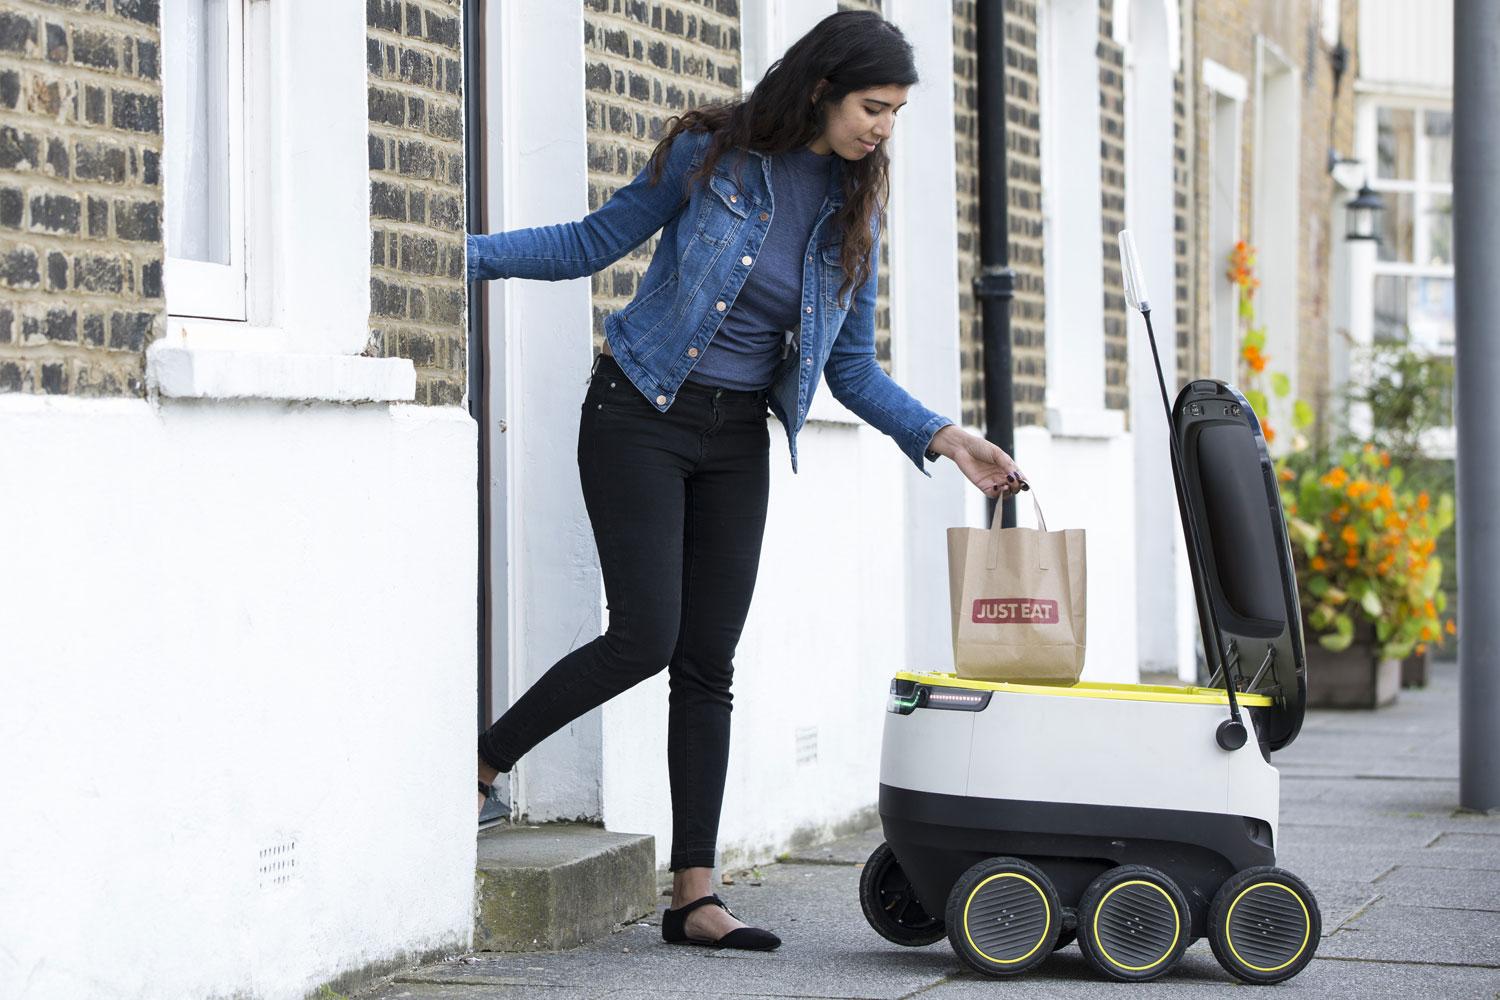 Giảm tiếp xúc giữa mùa dịch, Mỹ sử dụng robot giao hàng tự động tại những cửa hàng tạp hóa - Ảnh 2.